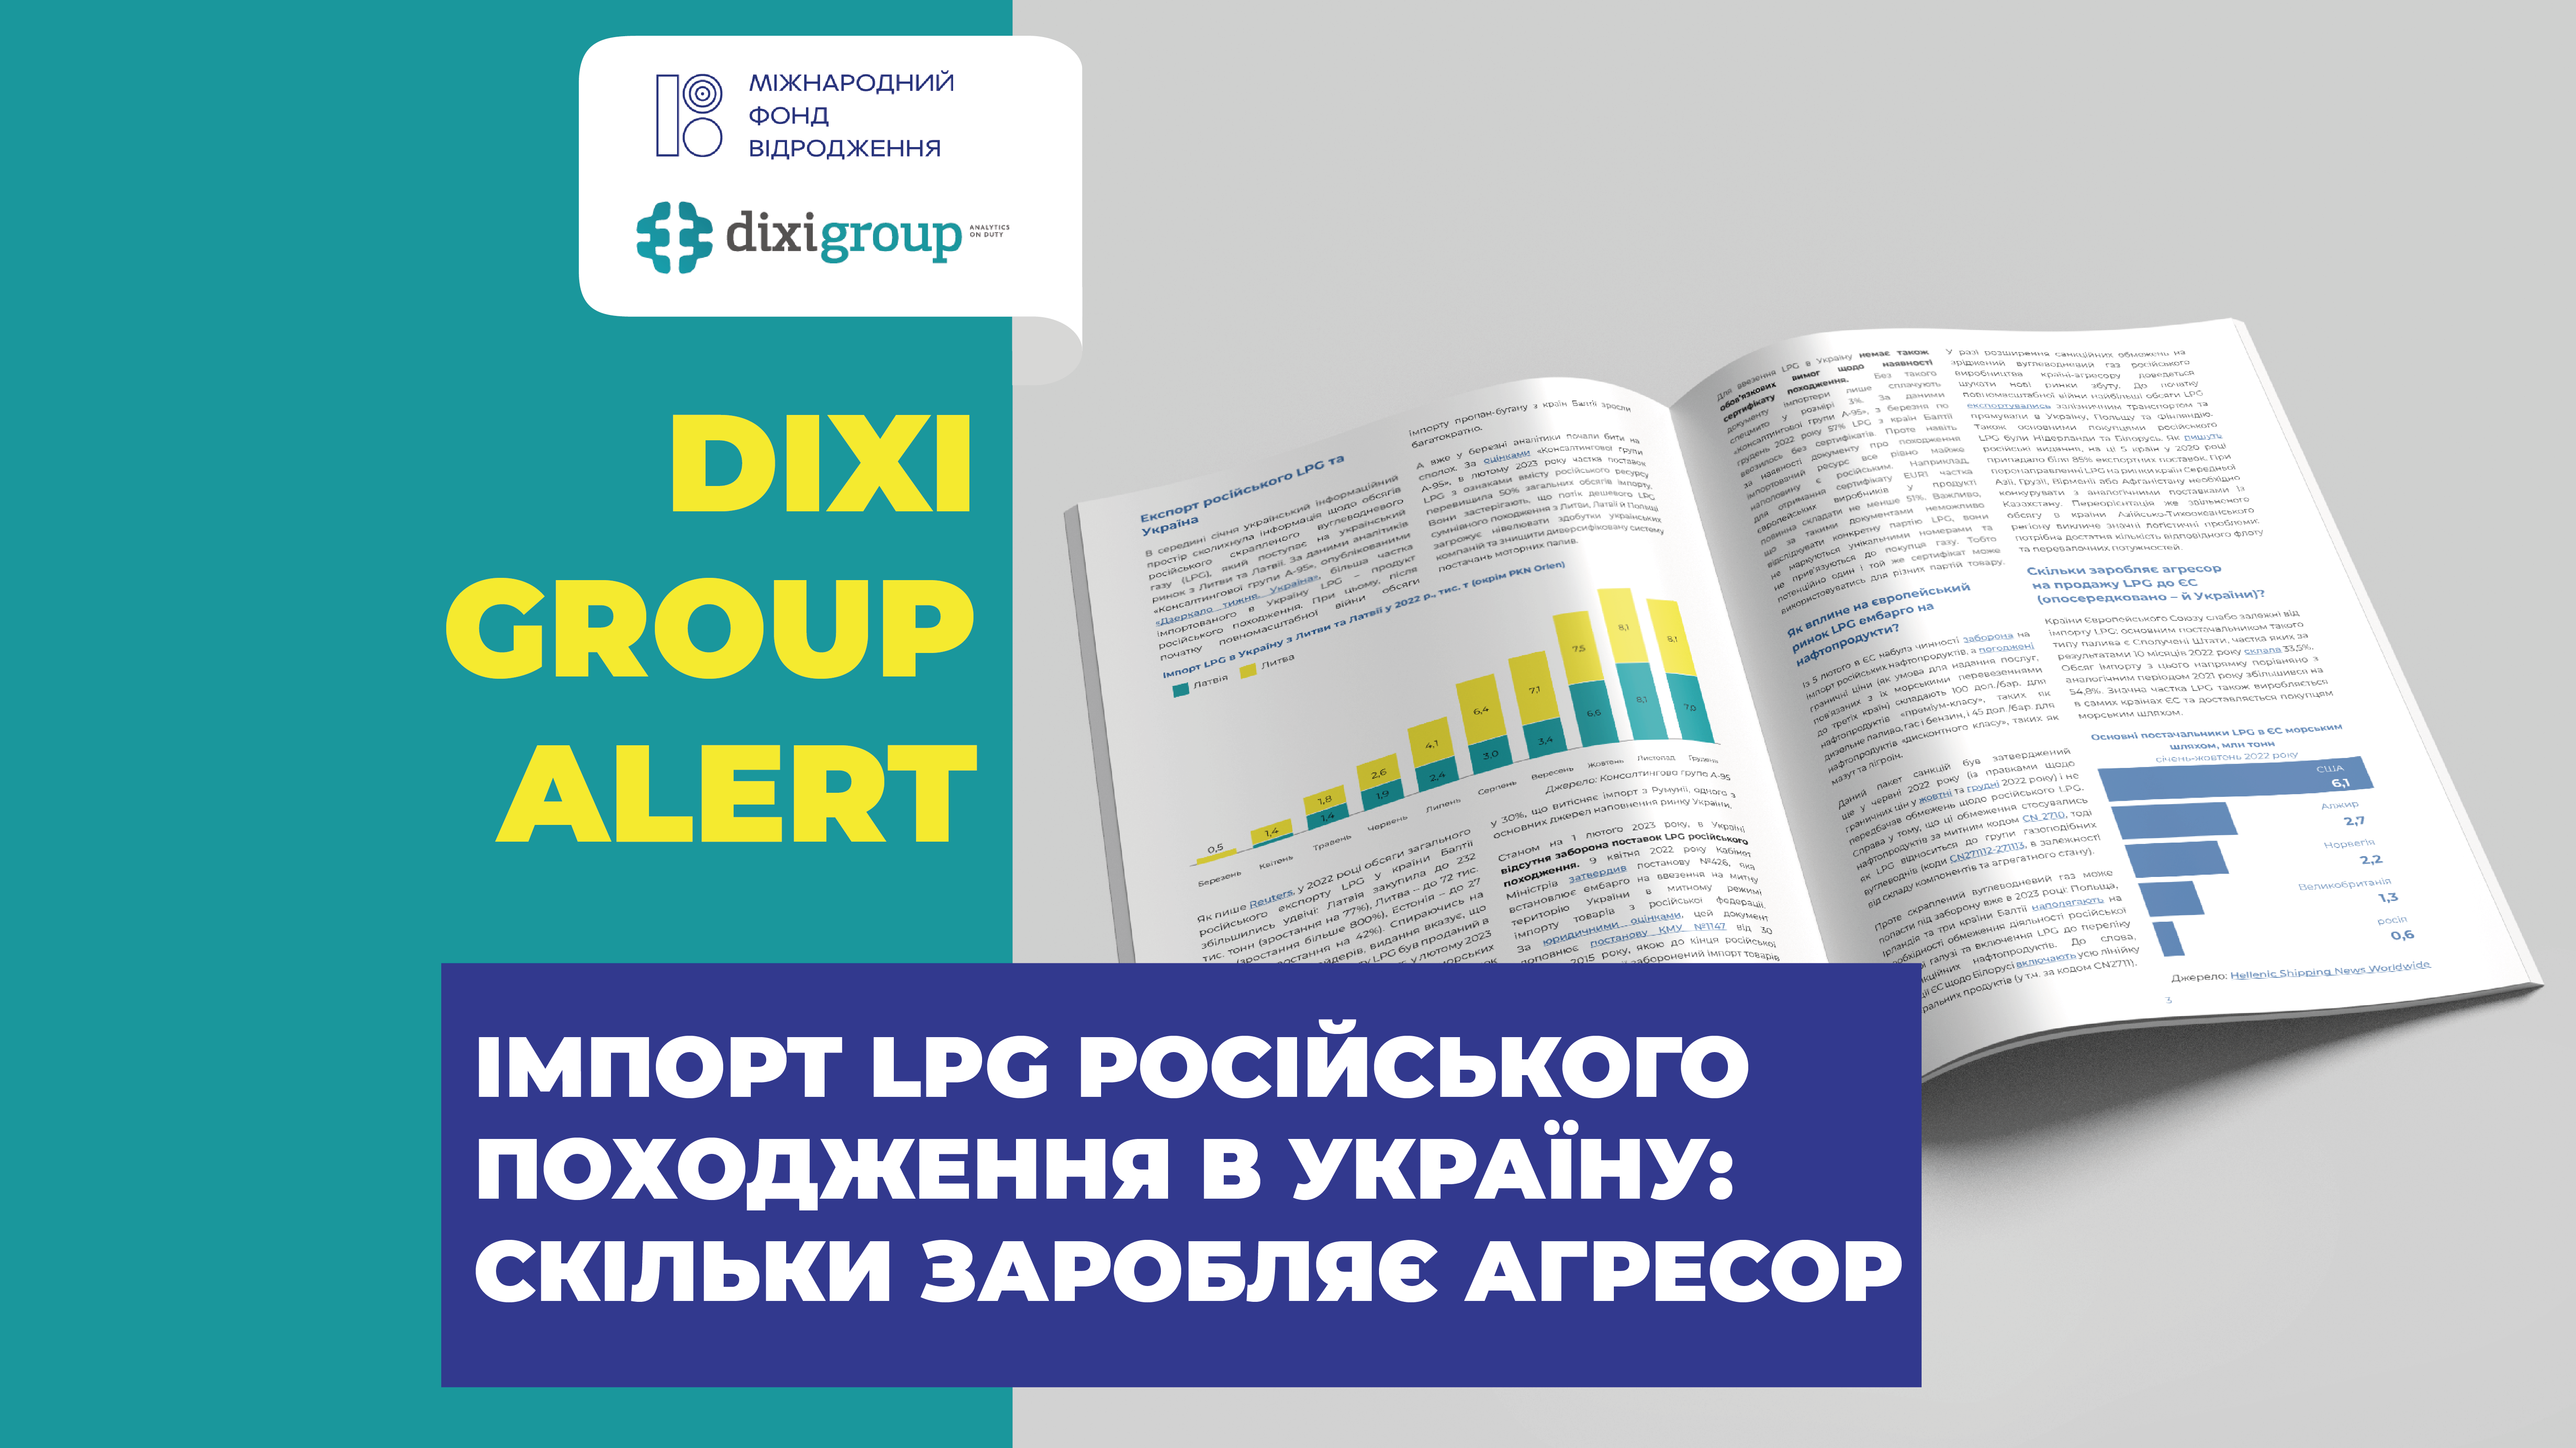 Імпорт LPG російського походження в Україну: скільки заробляє агресор — DiXi Group alert